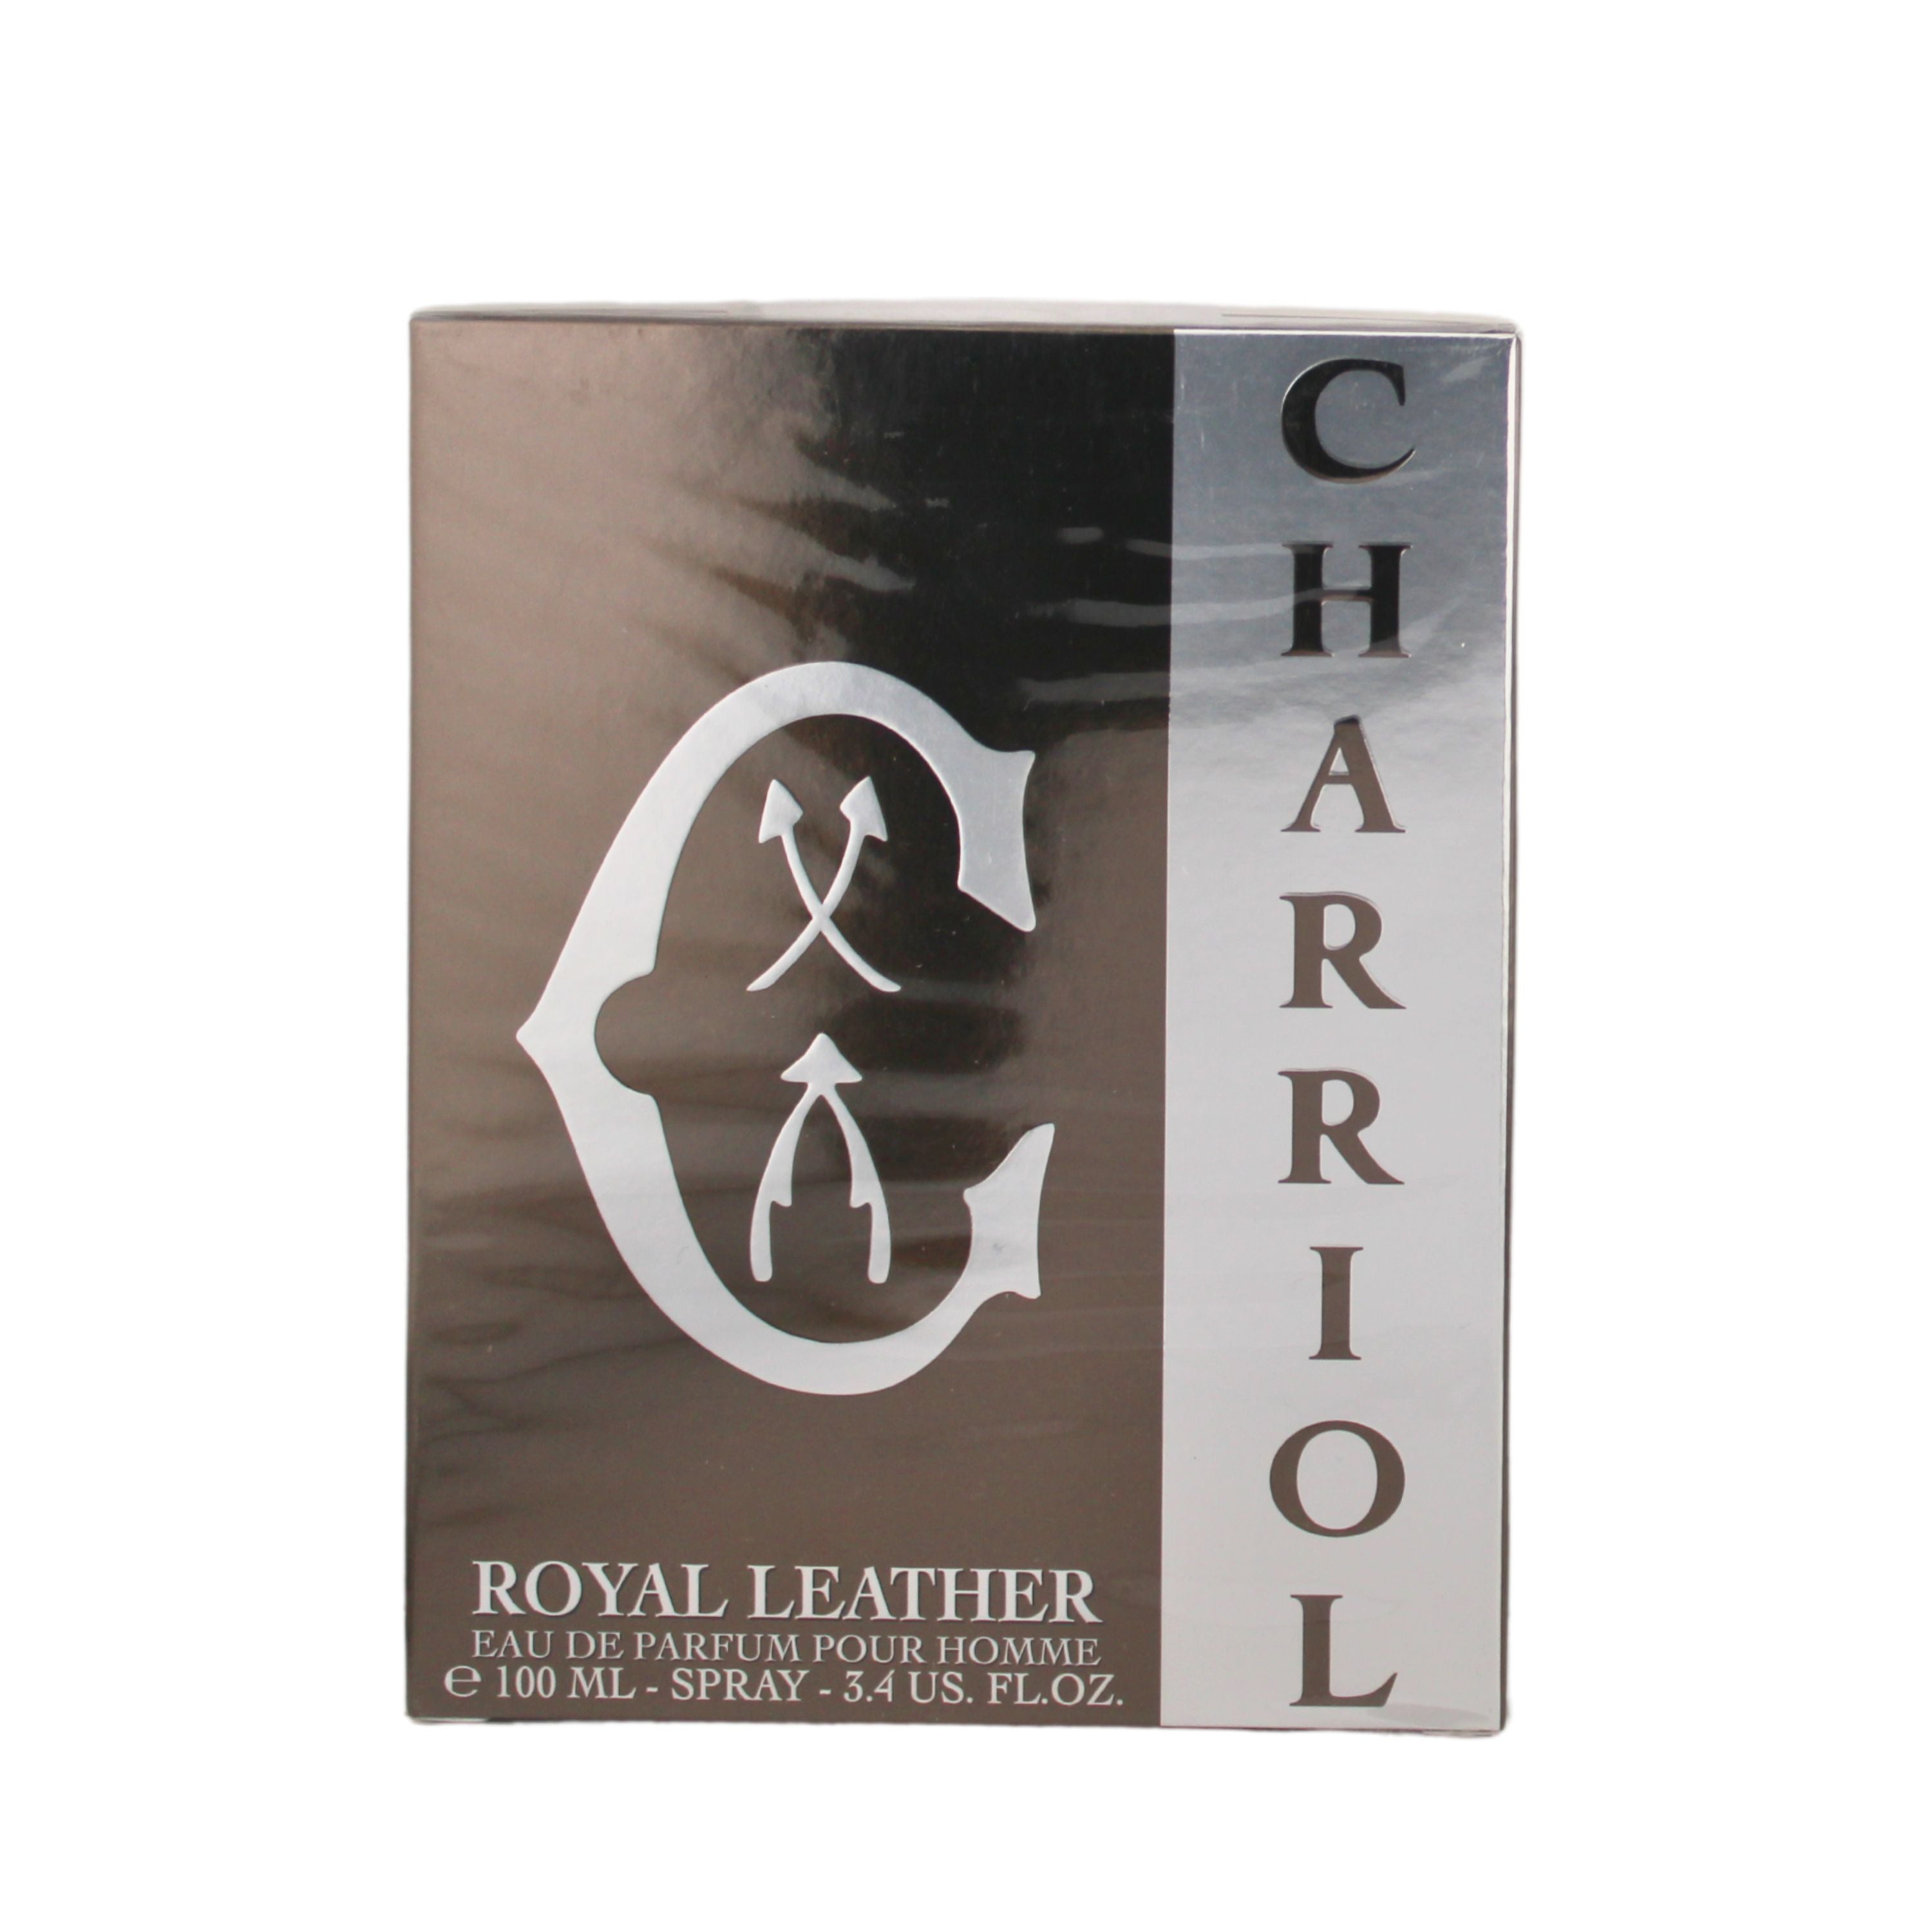 Charriol Royal Leather Eau de Parfum for Men